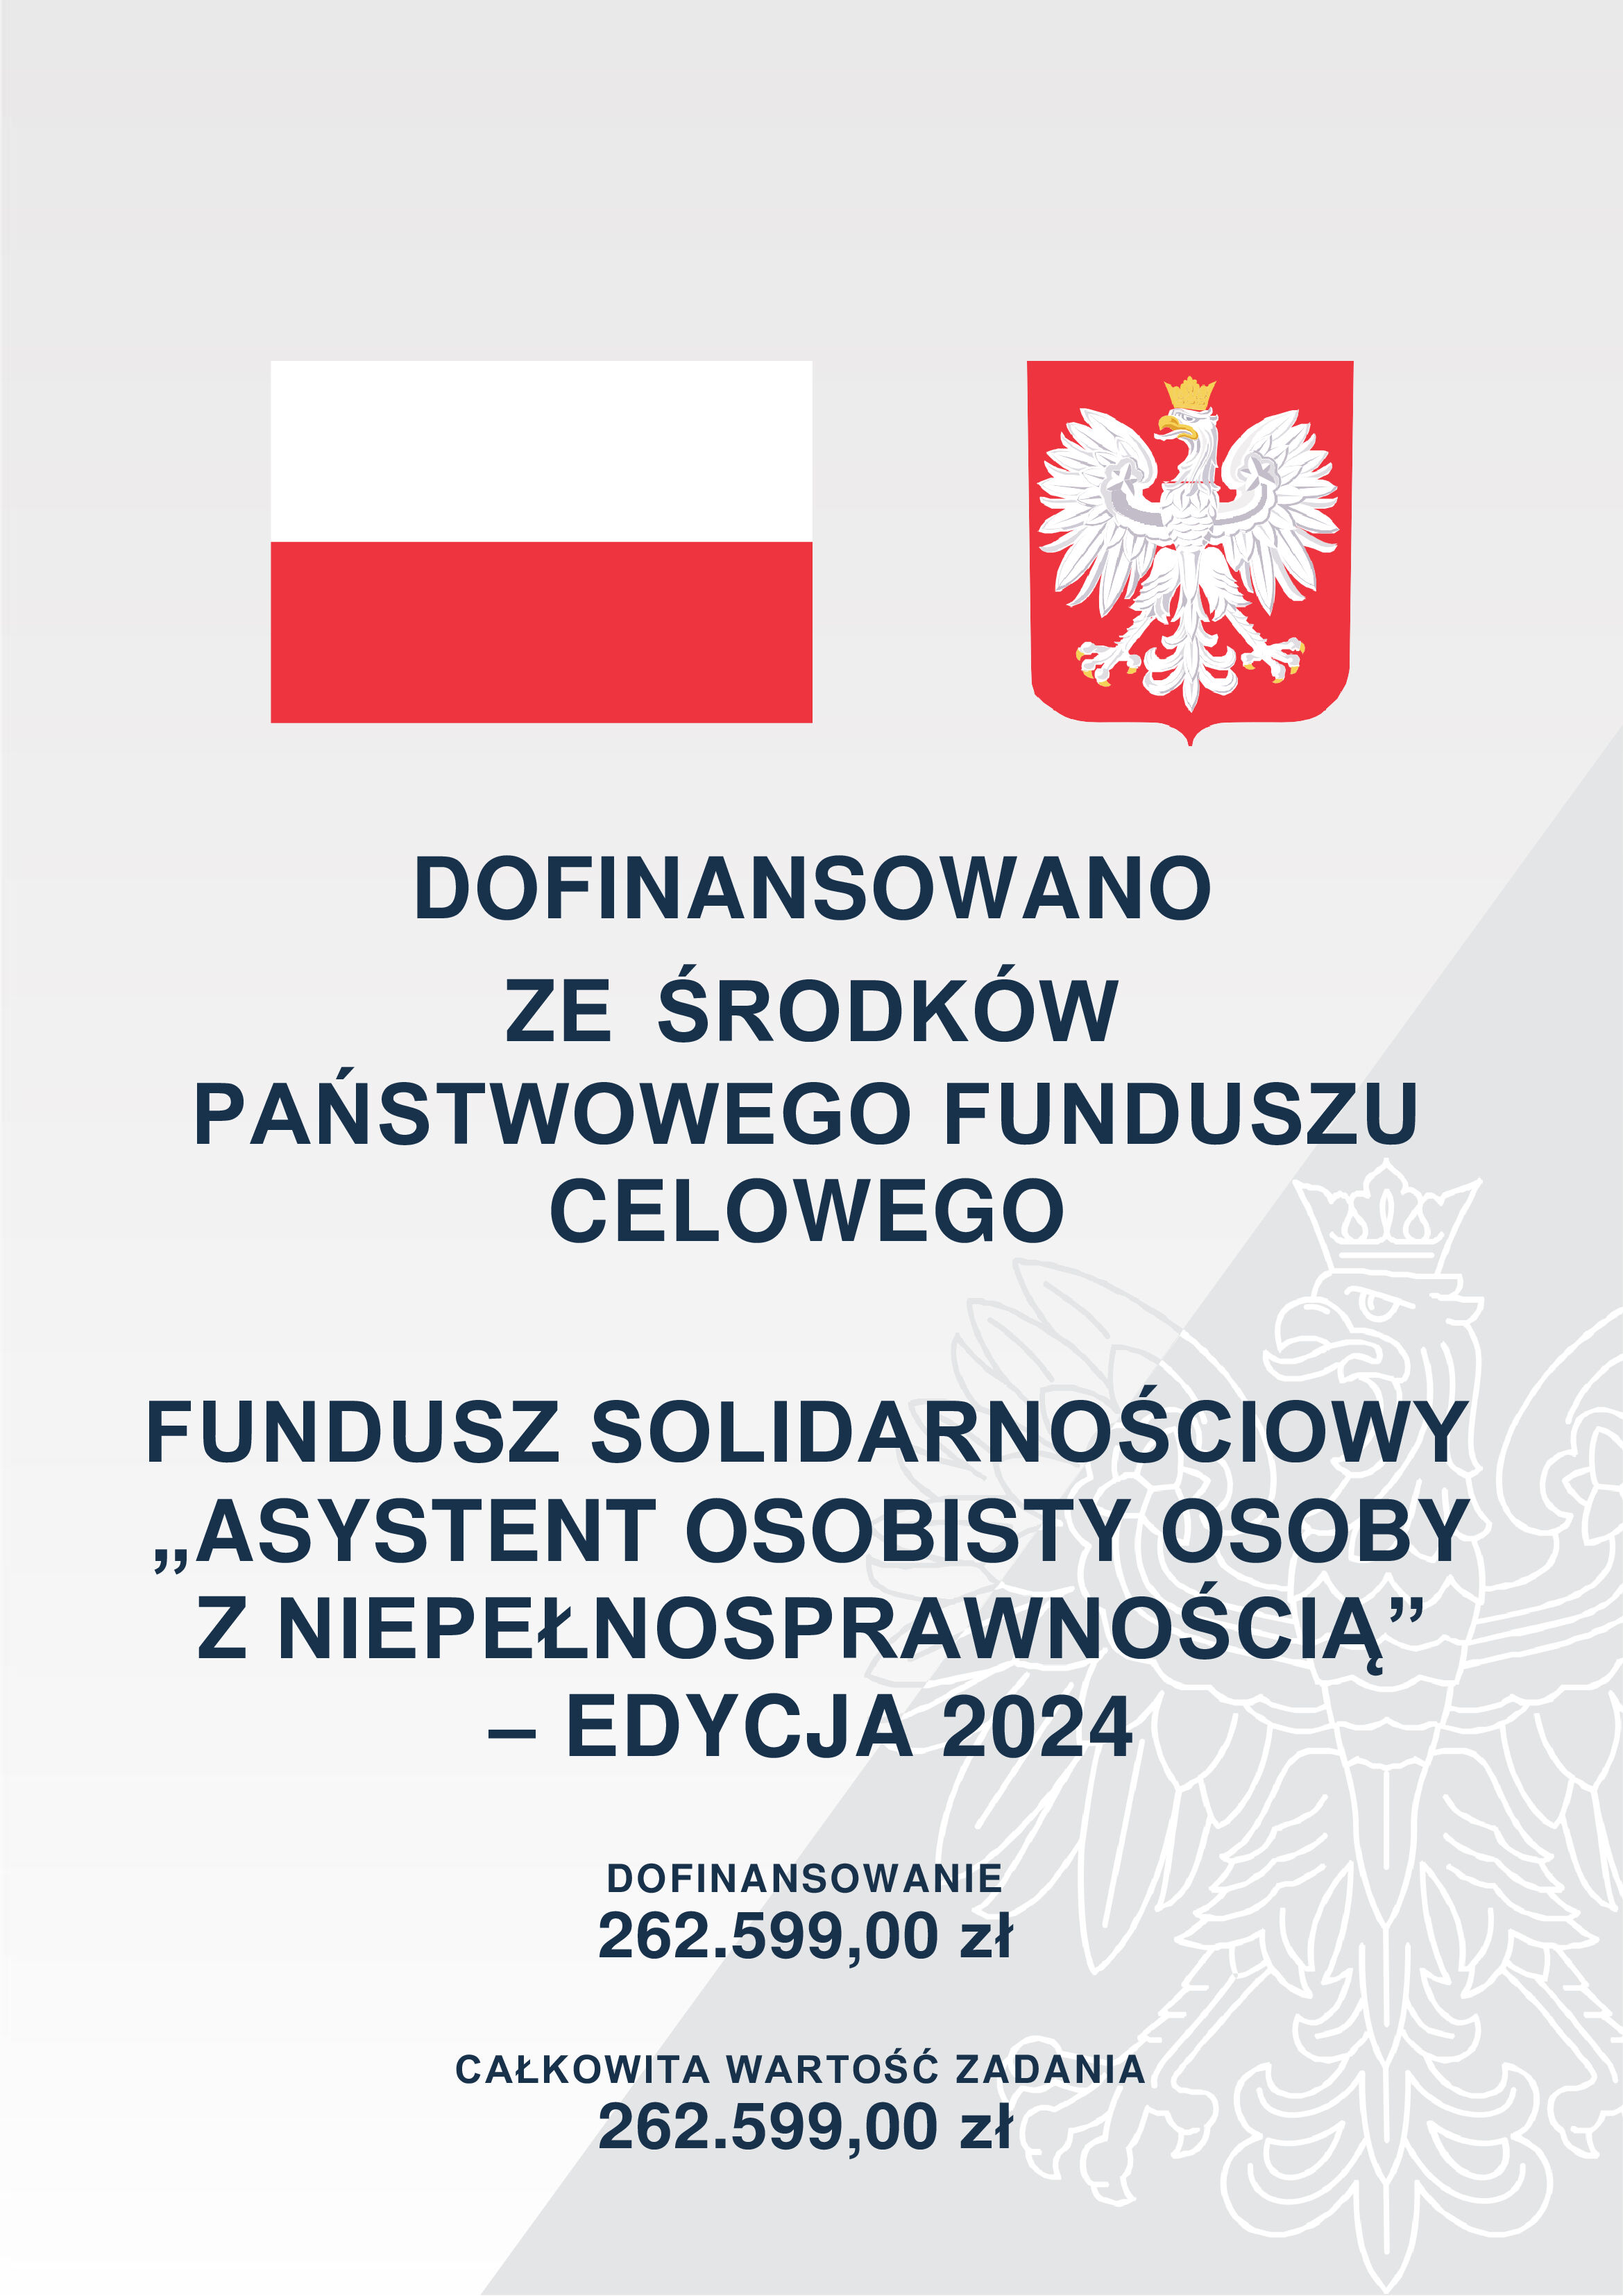 Zdjęcie przedstawia plakat z napisem "Dofinansowano ze środków Państwowego Funduszu" z polską flagą oraz herbem Polski, informujący o przyznaniu dofinansowania z Funduszu Solidarnościowego na kwotę 262 599,00 zł.